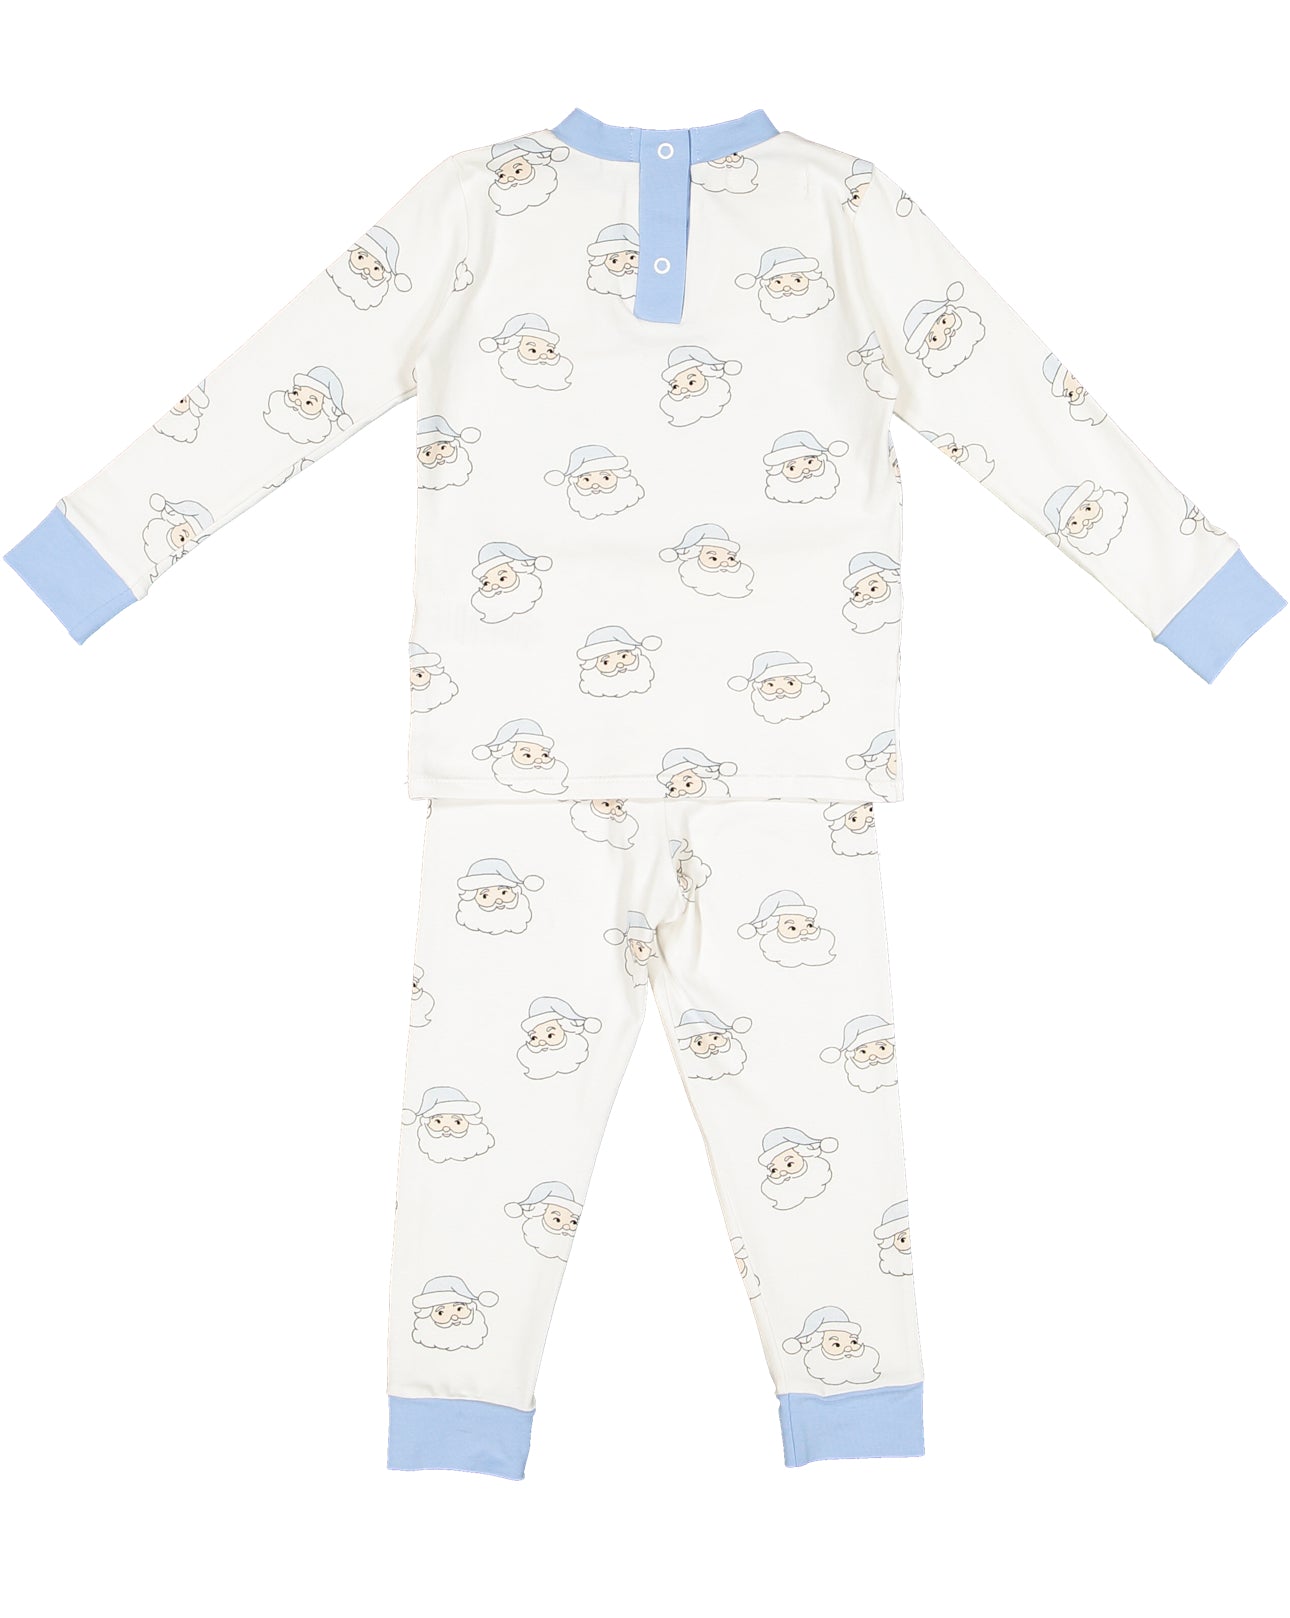 Blue Santa Boy Pajama Set (5T,6T)